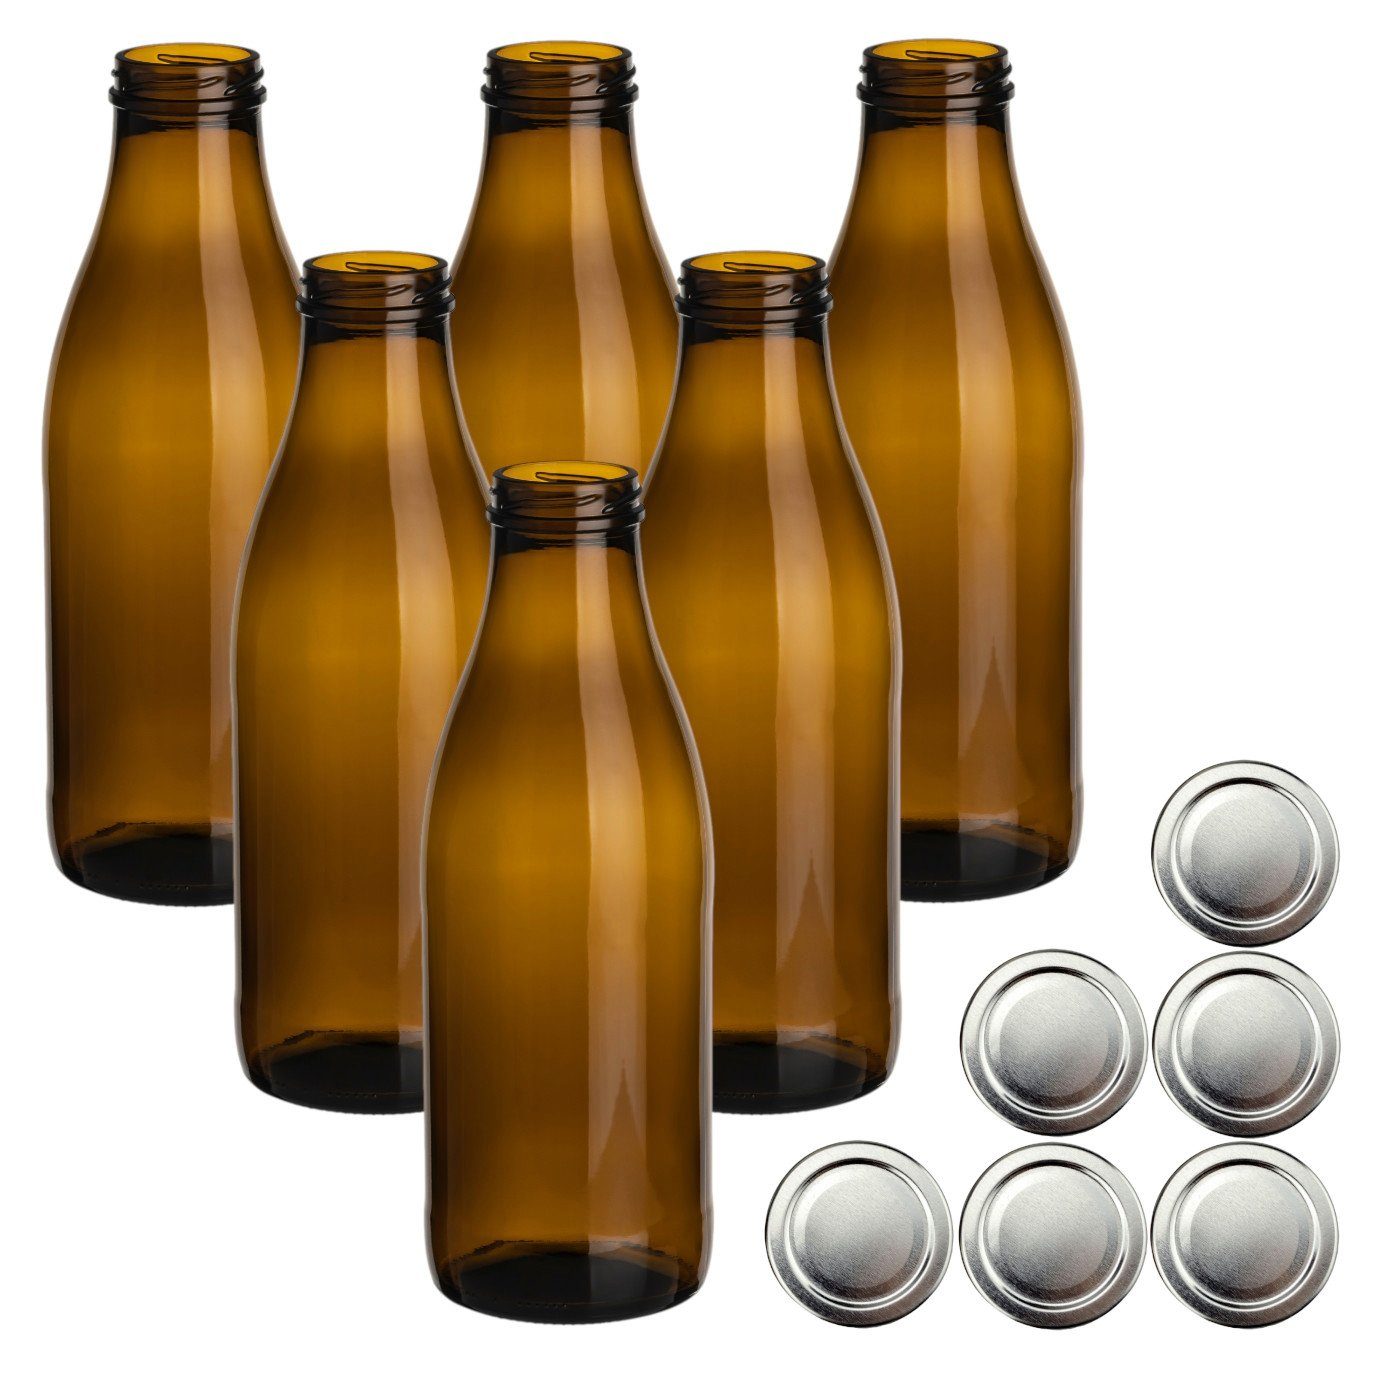 gouveo Trinkflasche Saftflaschen 1000 ml mit Schraub-Deckel - Große Flasche 1,0 l aus Glas, 6er Set, braun/silberfarben